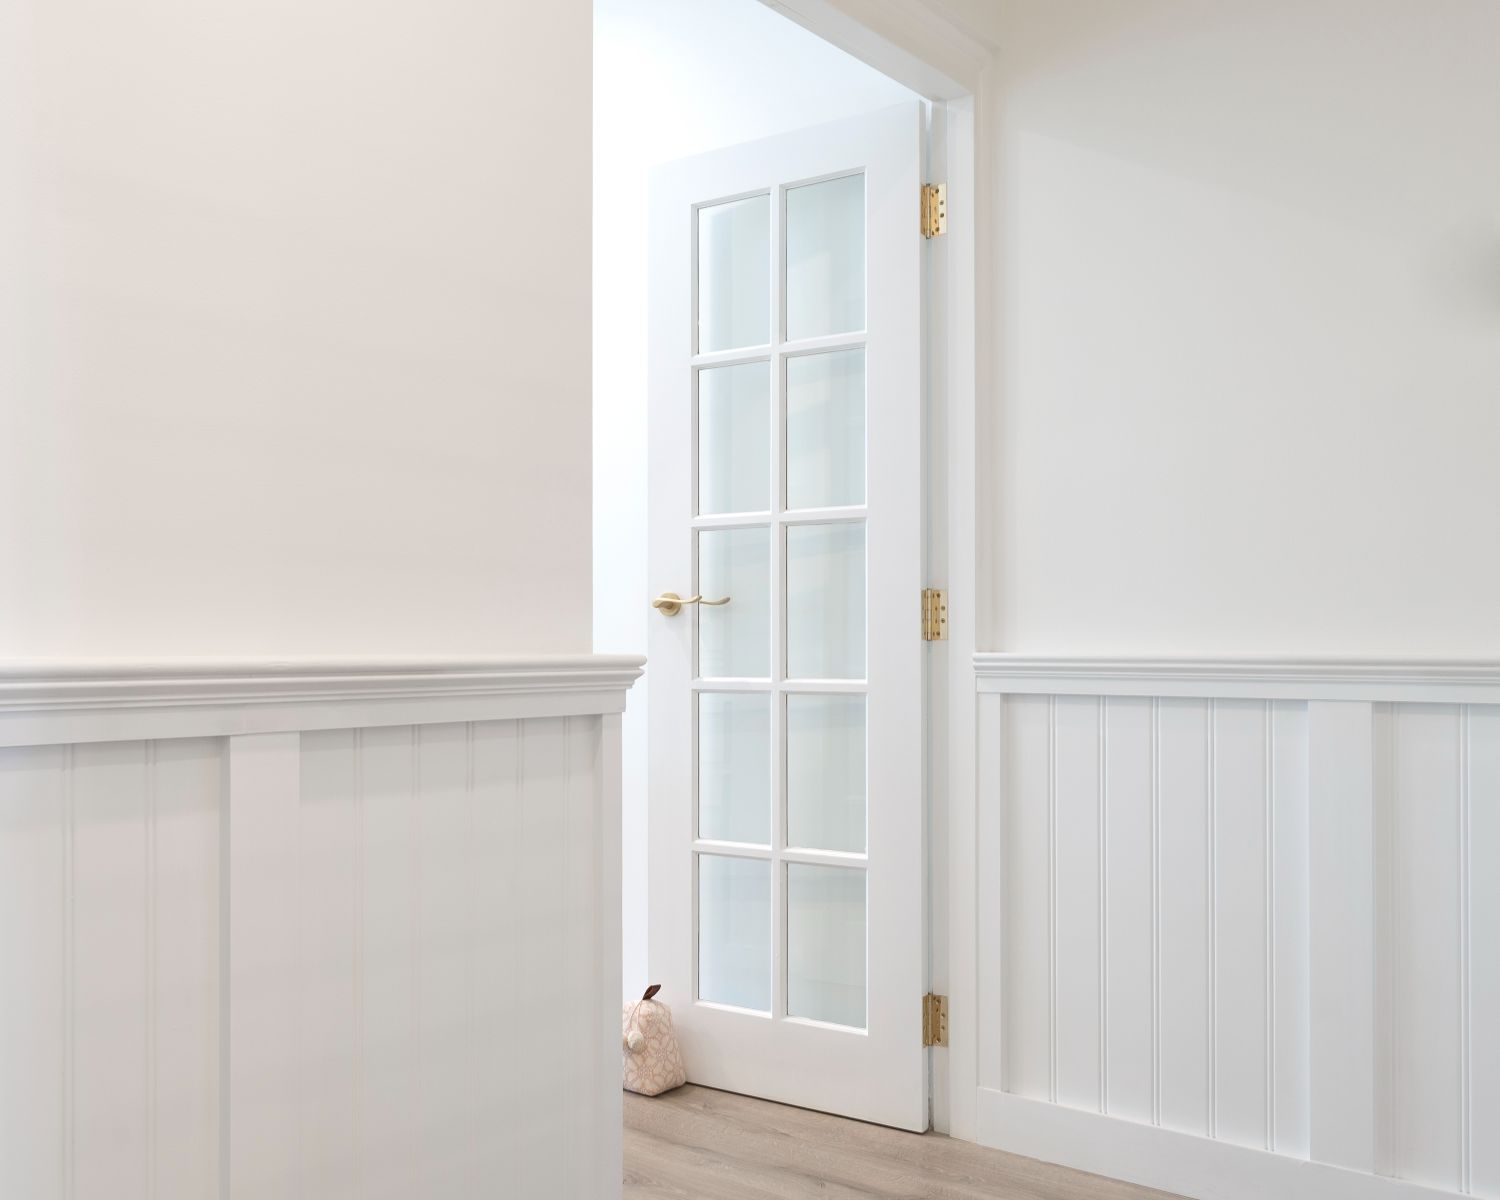 Doors Plus - Wainscoting - Living Room Opening into Hallway